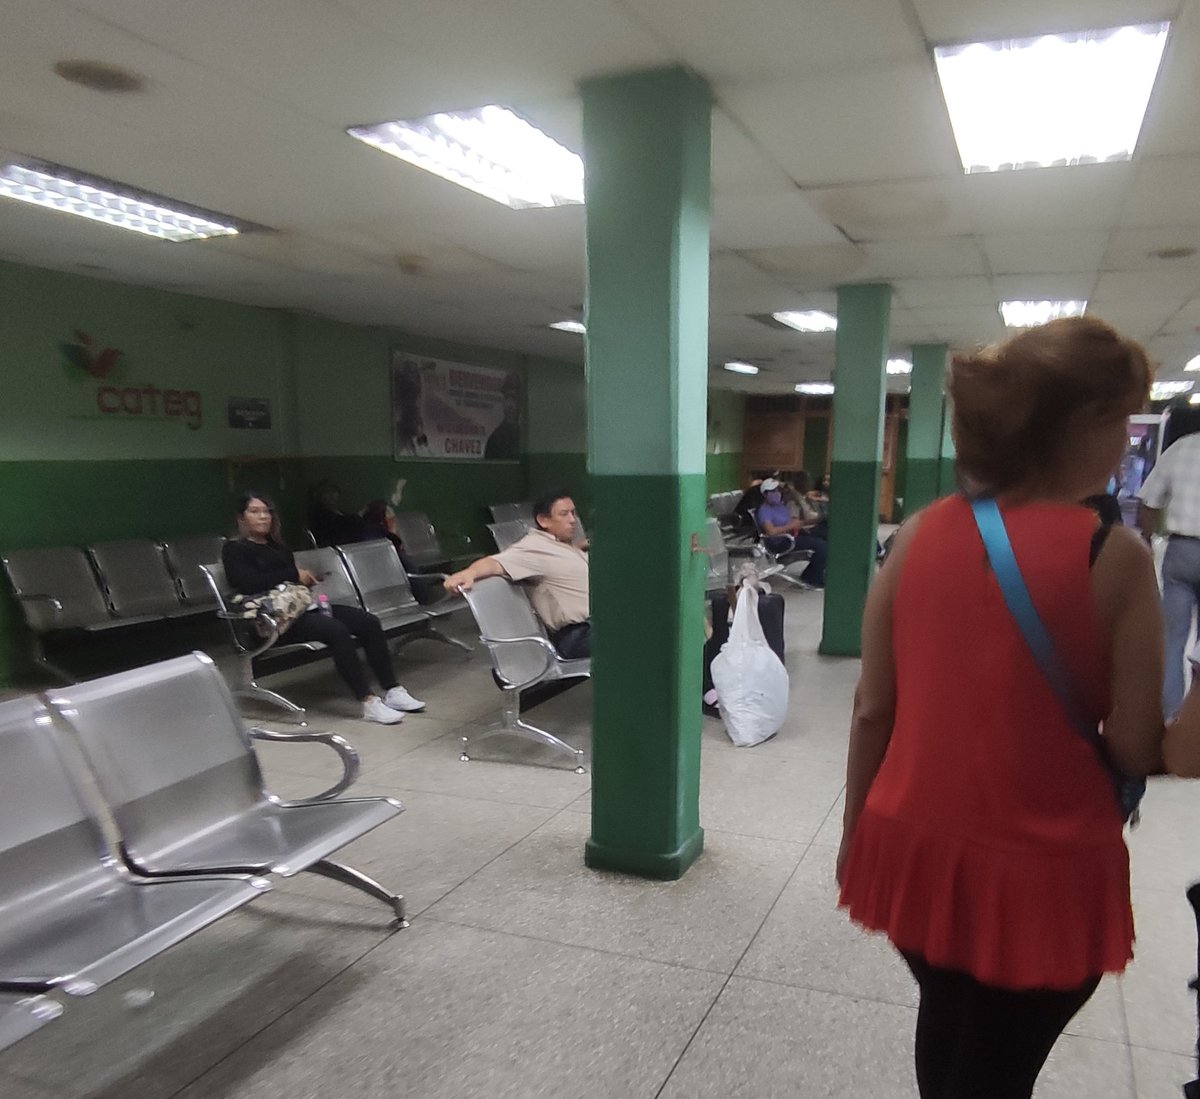 Que ASCO la Sala de espera del terminal de Oriente en Maracay Estado Aragua un olor fétido era lo que reinaba en el lugar que no tiene ni ventiladores.

¿Para qué cobran tasa de salida? ¿No les da vergüenza? 🤬🤬🤬